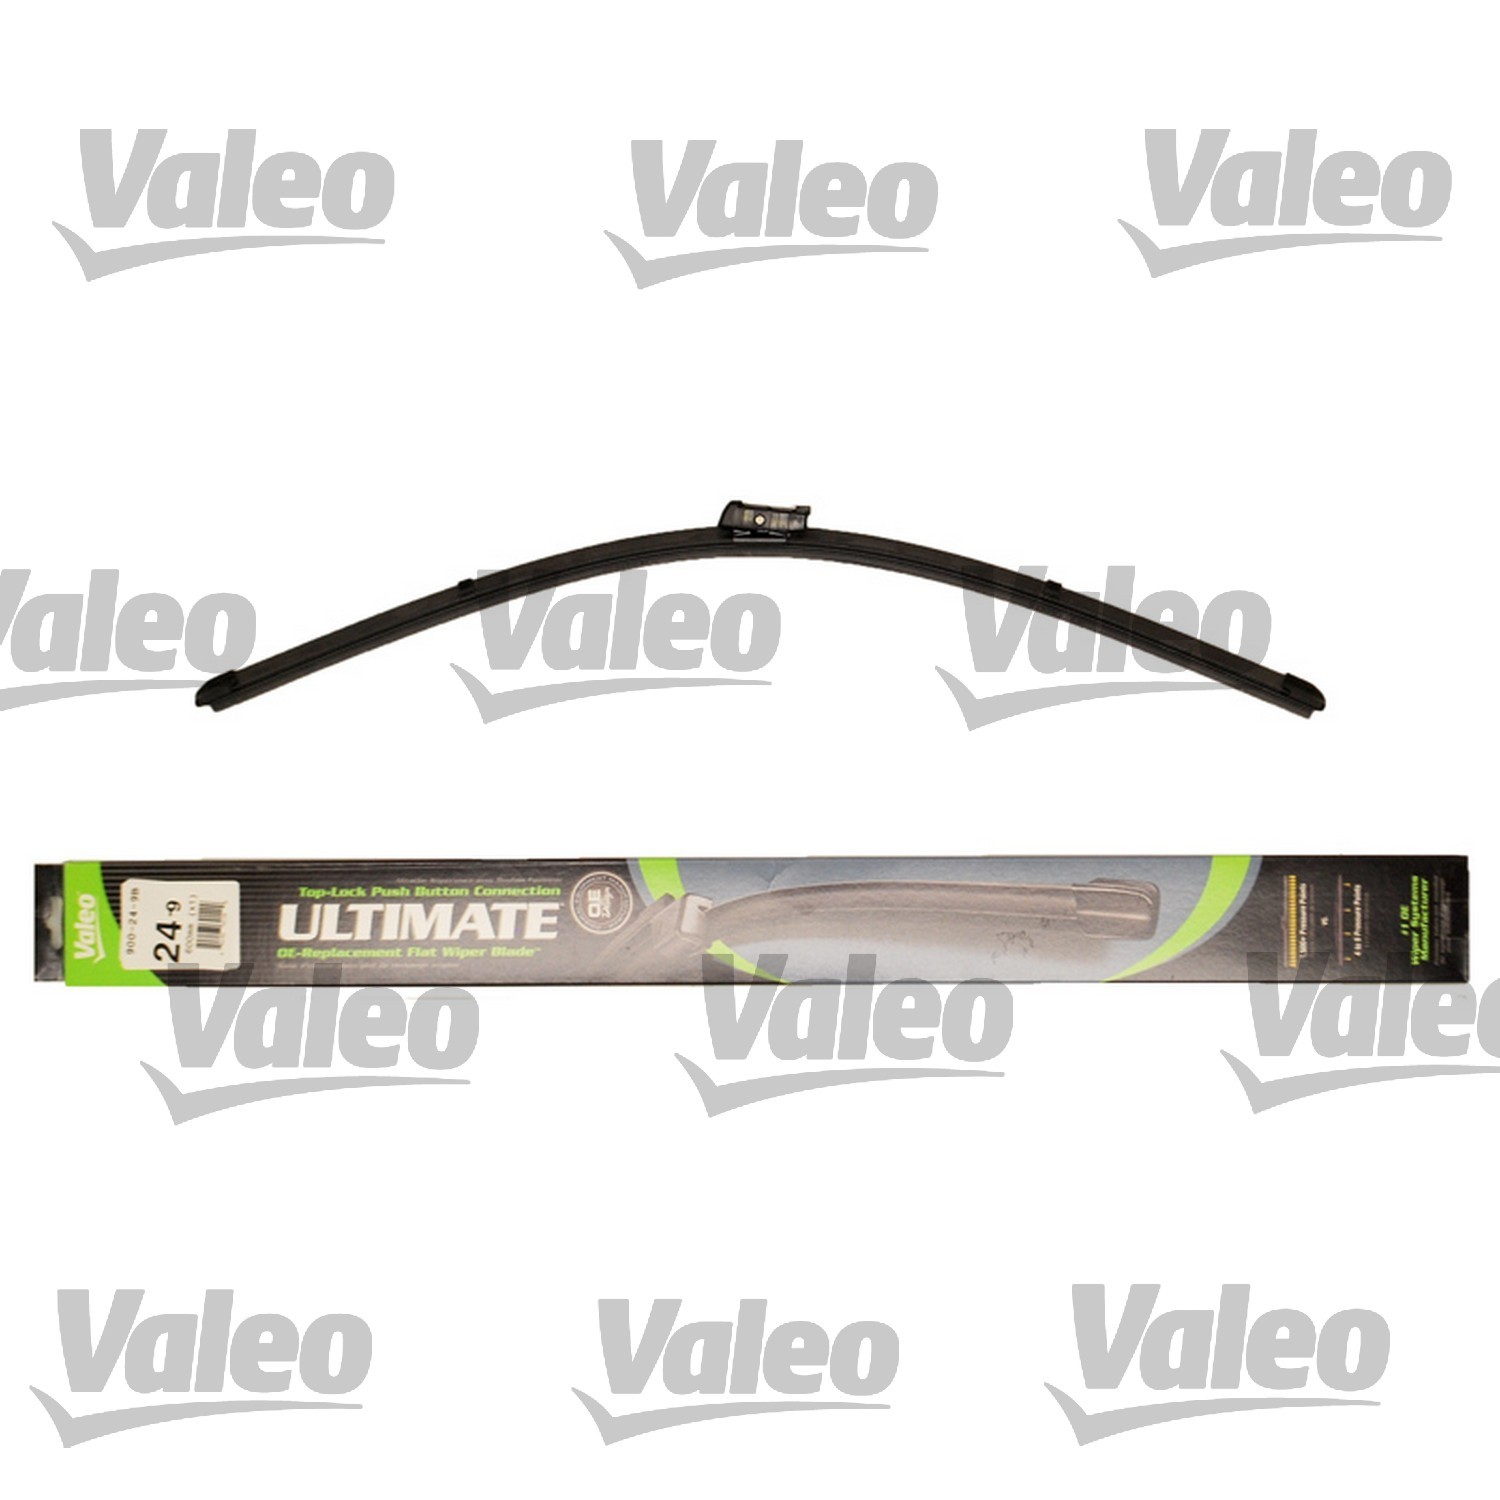 VALEO - Ultimate Wiper Blade Refill - VEO 900-24-9B